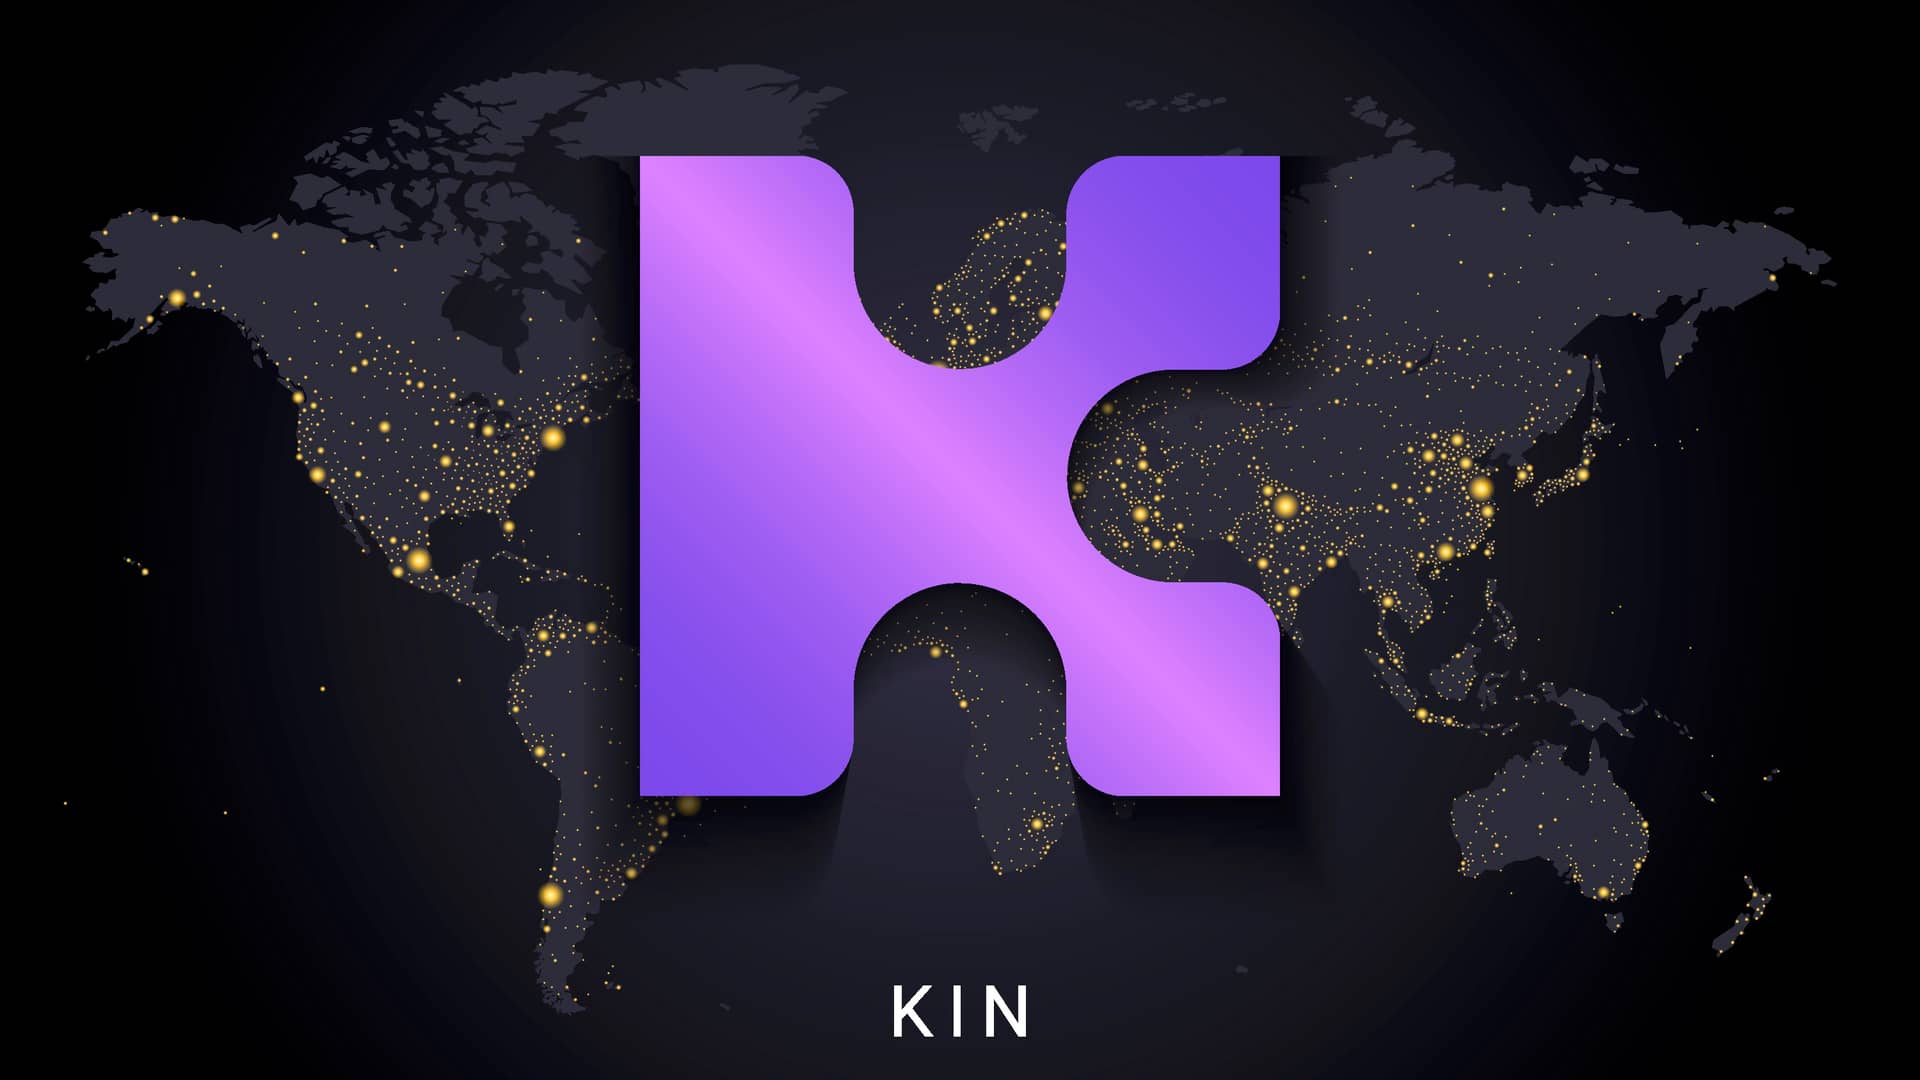 logotipo de la empresa de criptomonedas kin sobre el mapa del mundo por la noche iluminado con lucecitas